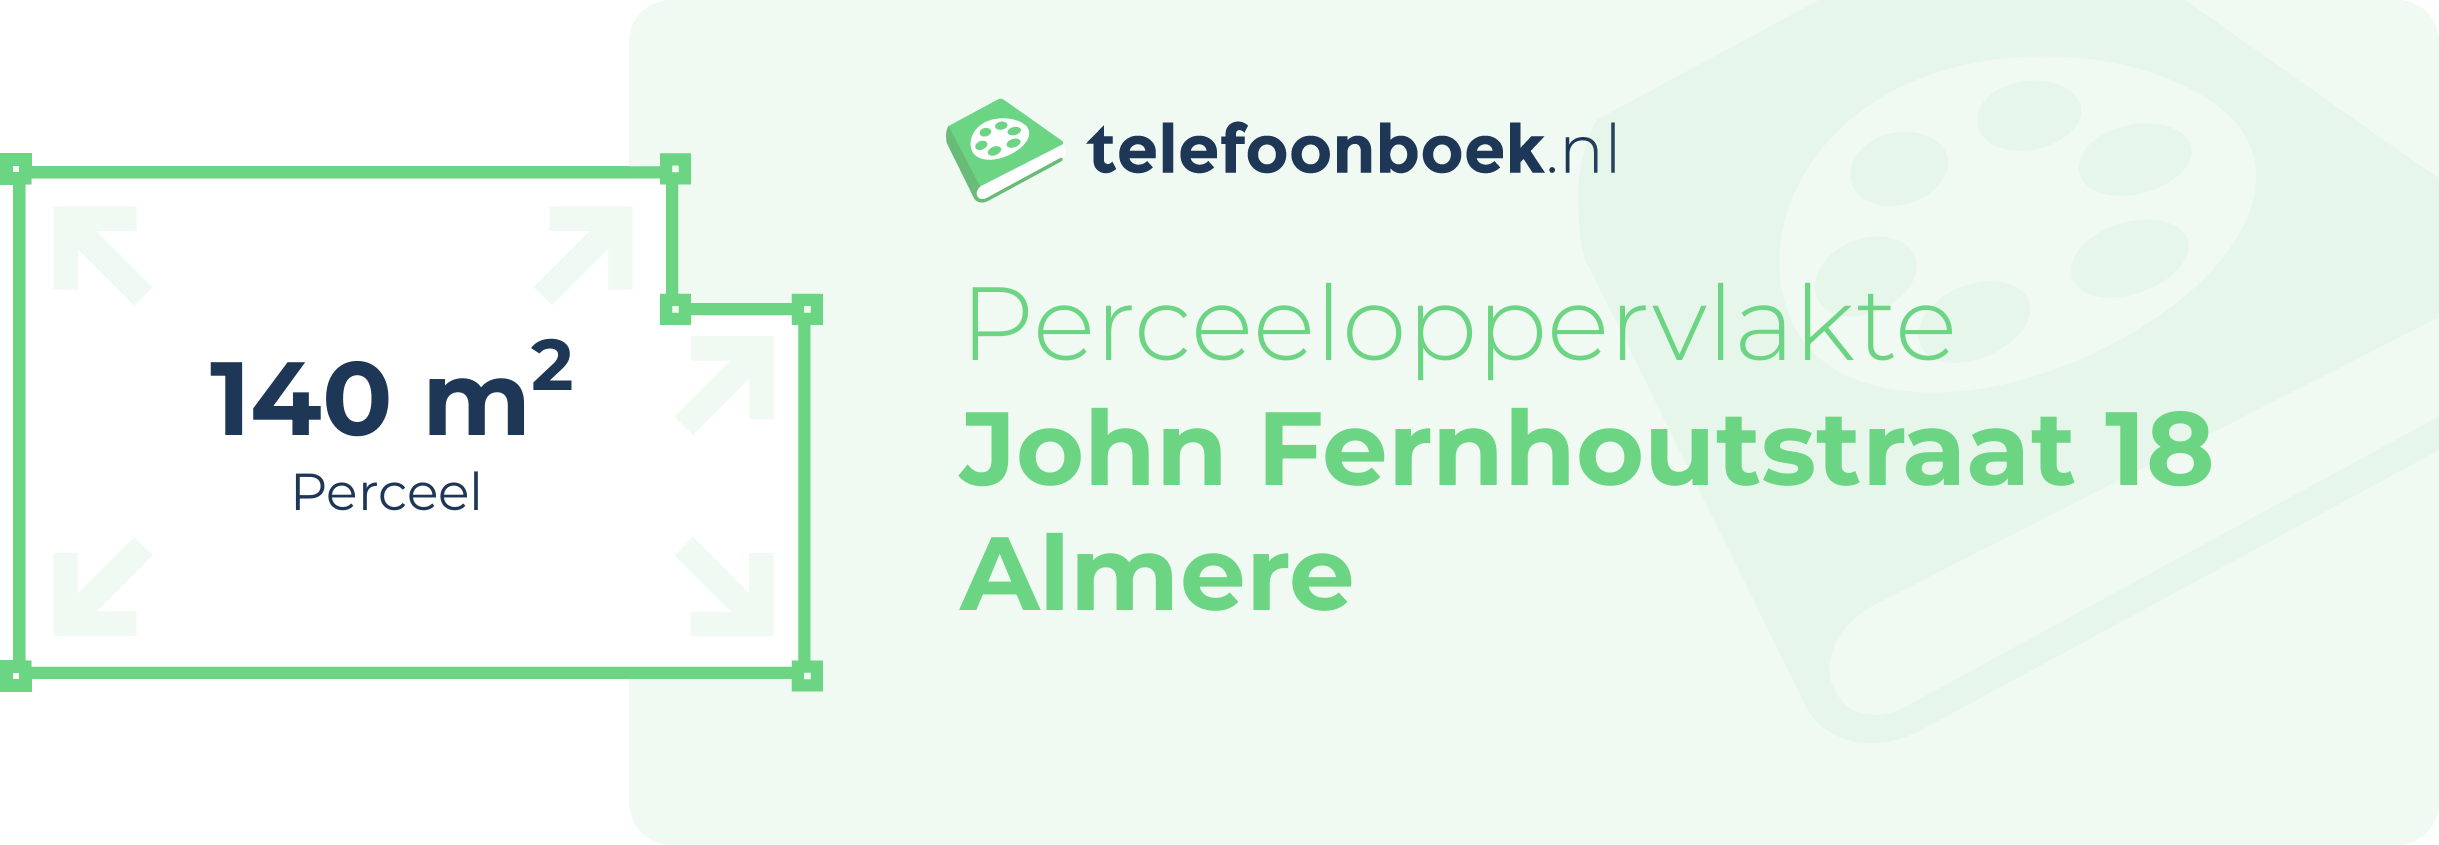 Perceeloppervlakte John Fernhoutstraat 18 Almere